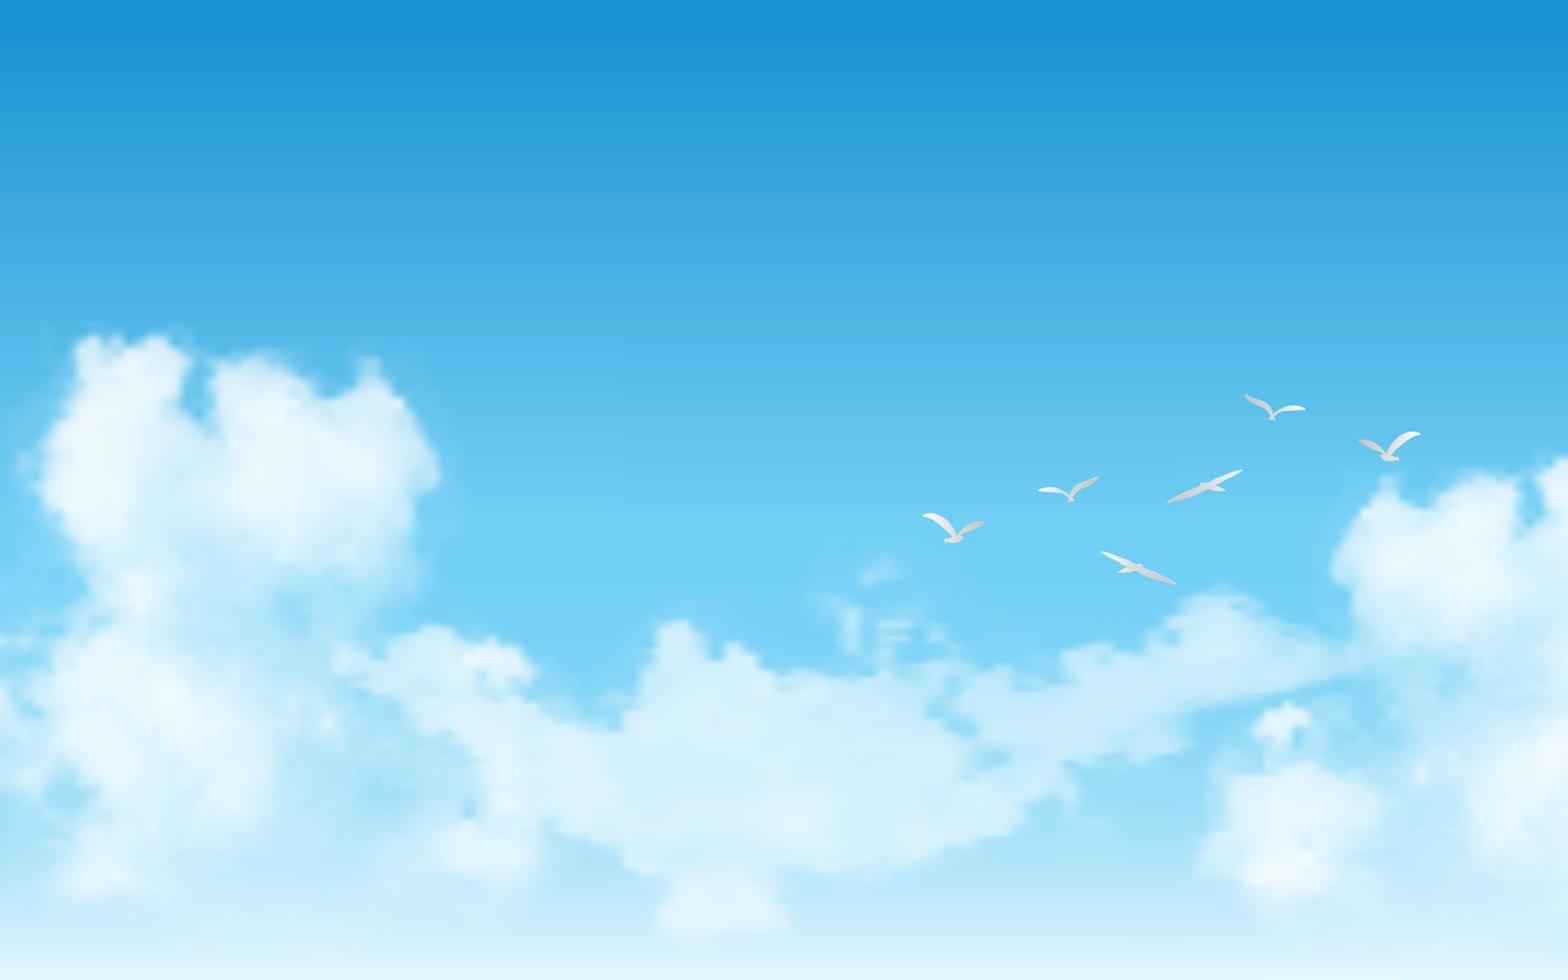 céu azul realista com pássaros voando vetor